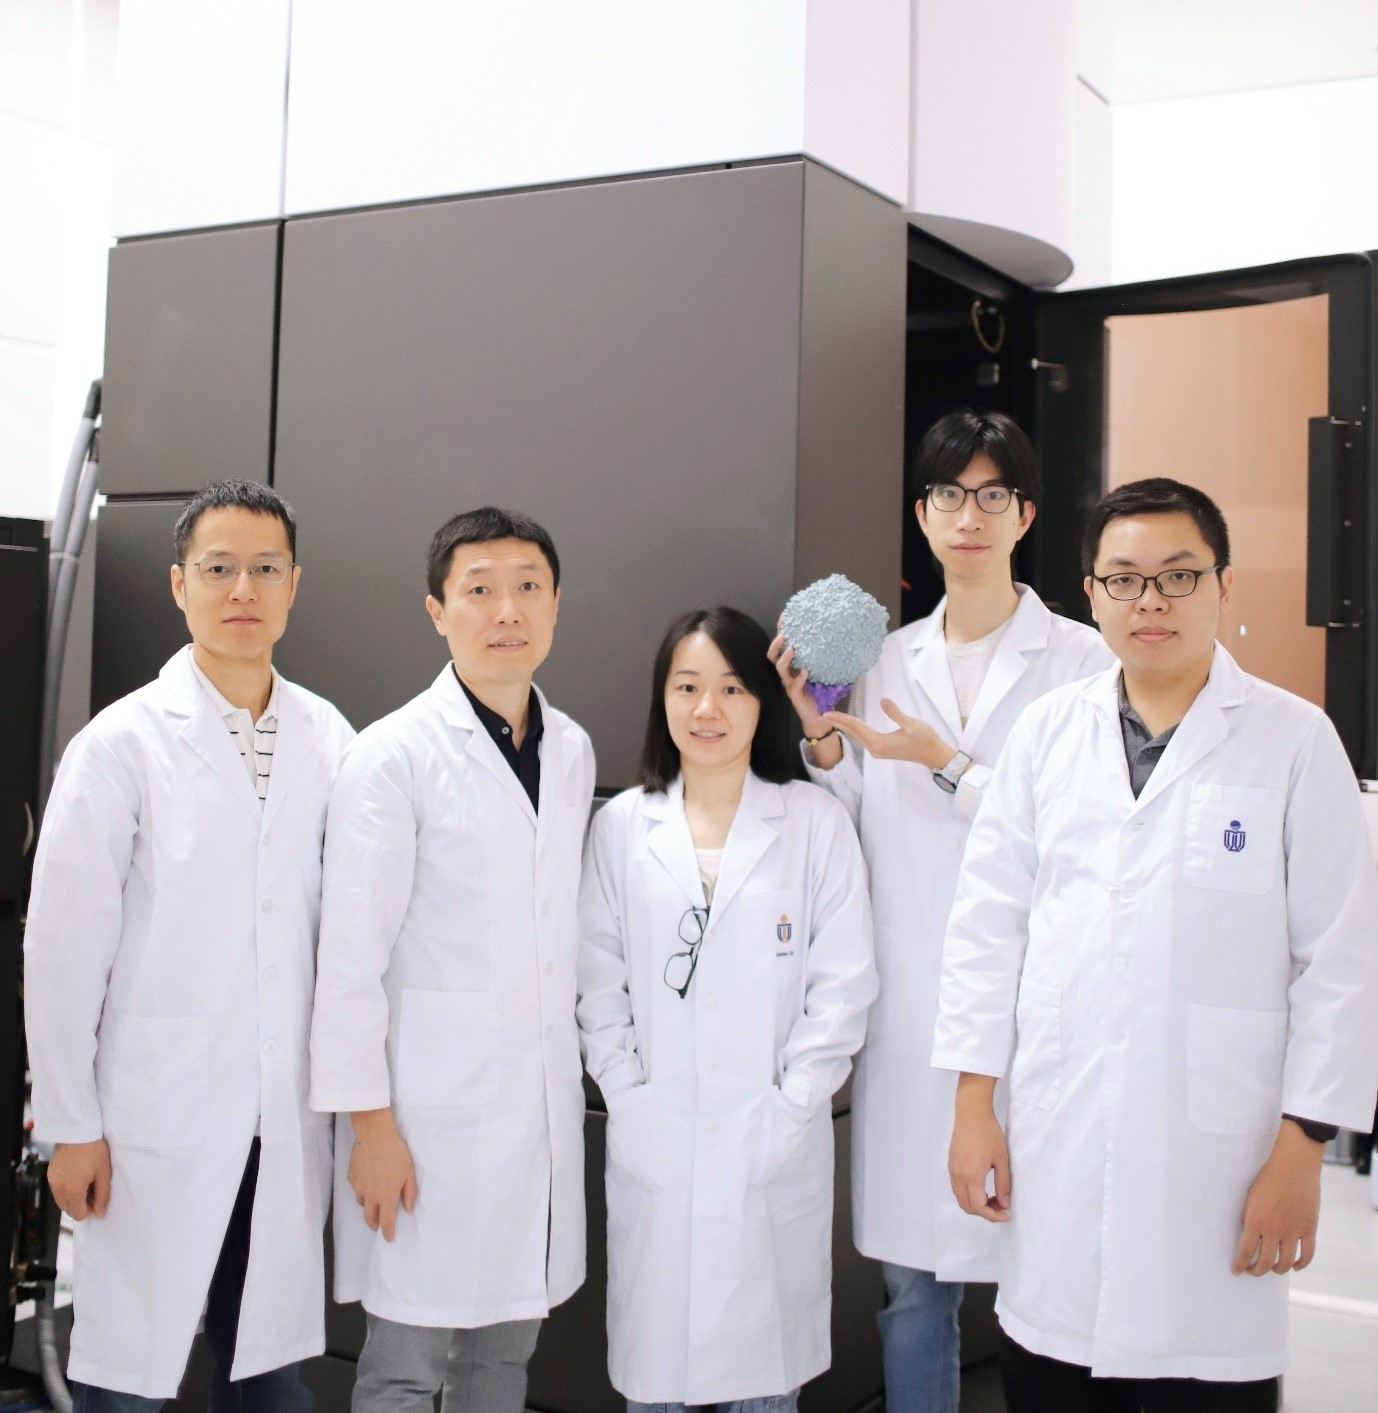 研究团队的合影。从左到右分别是党尚宇教授、曾庆璐教授、蔡兰兰博士、刘航先生（手中拿着3D打印的蓝藻病毒结构），以及肖诗维先生。